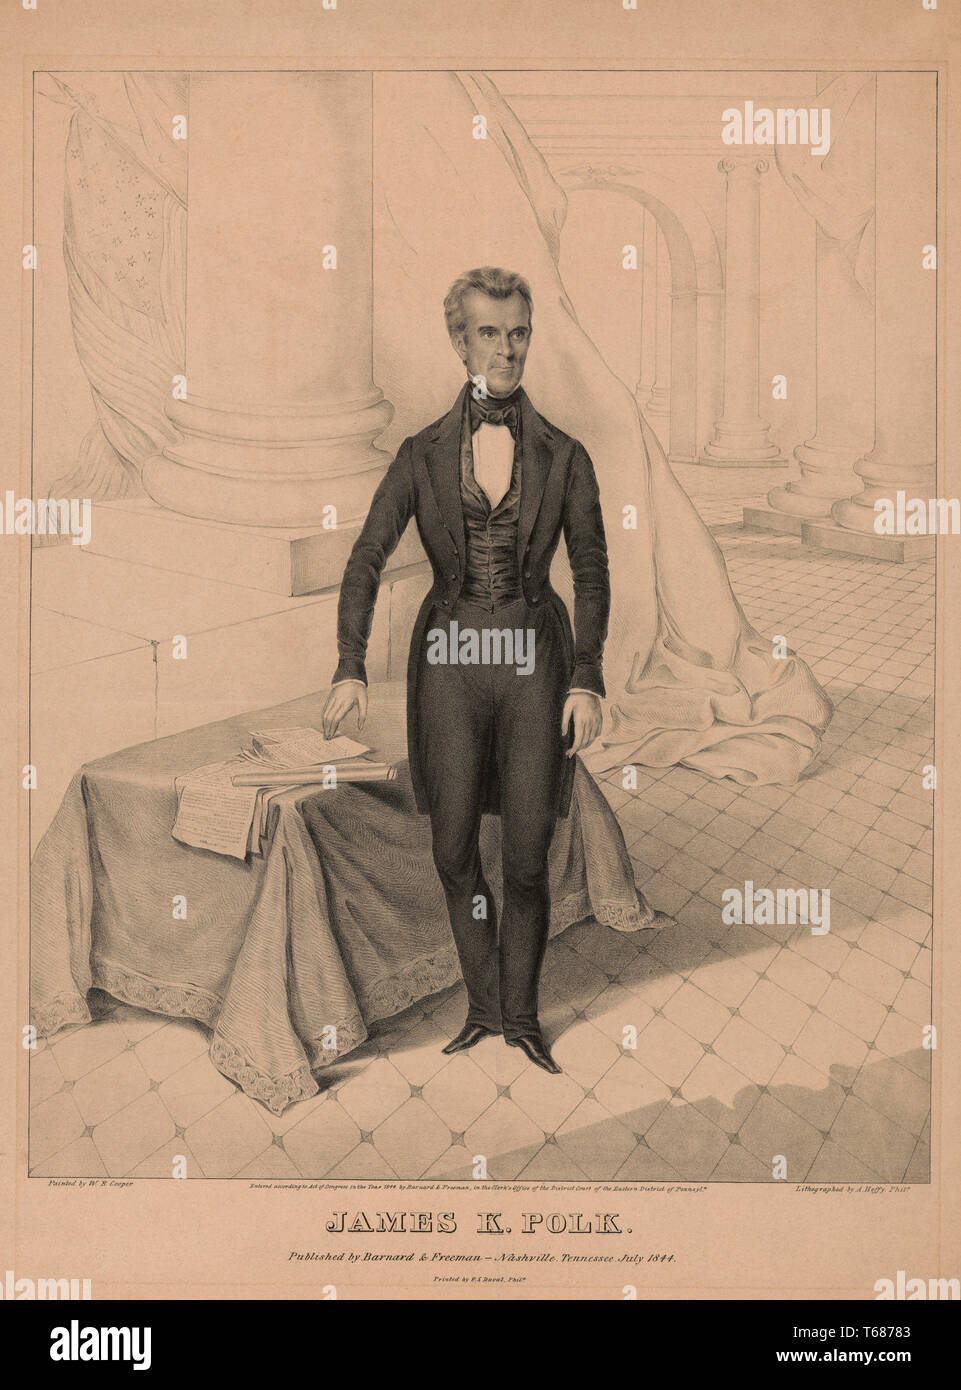 James K. Polk, Lithographie von A. Hoffy, Gedruckt von P.S.: Duval, von Barnard & Freeman, Nashville, Tennessee, Juli 1844 veröffentlicht. Stockfoto